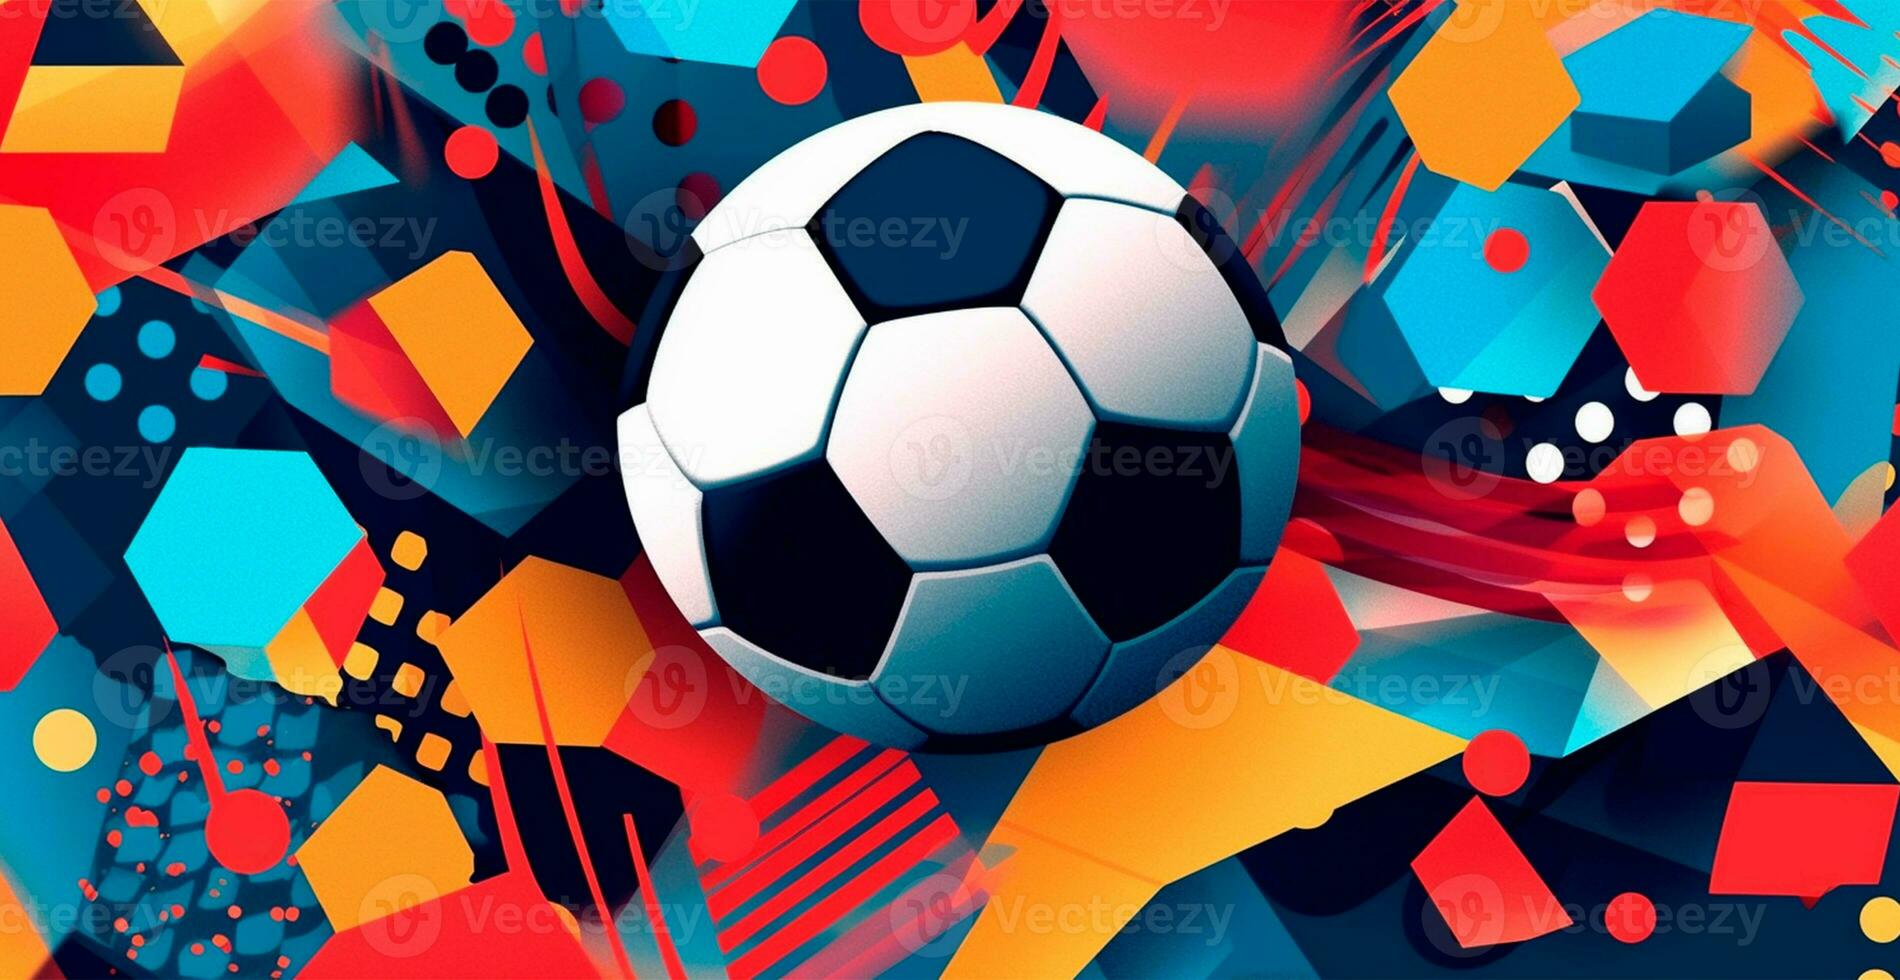 abstrakt fotboll bakgrund, sporter fotboll boll - ai genererad bild foto